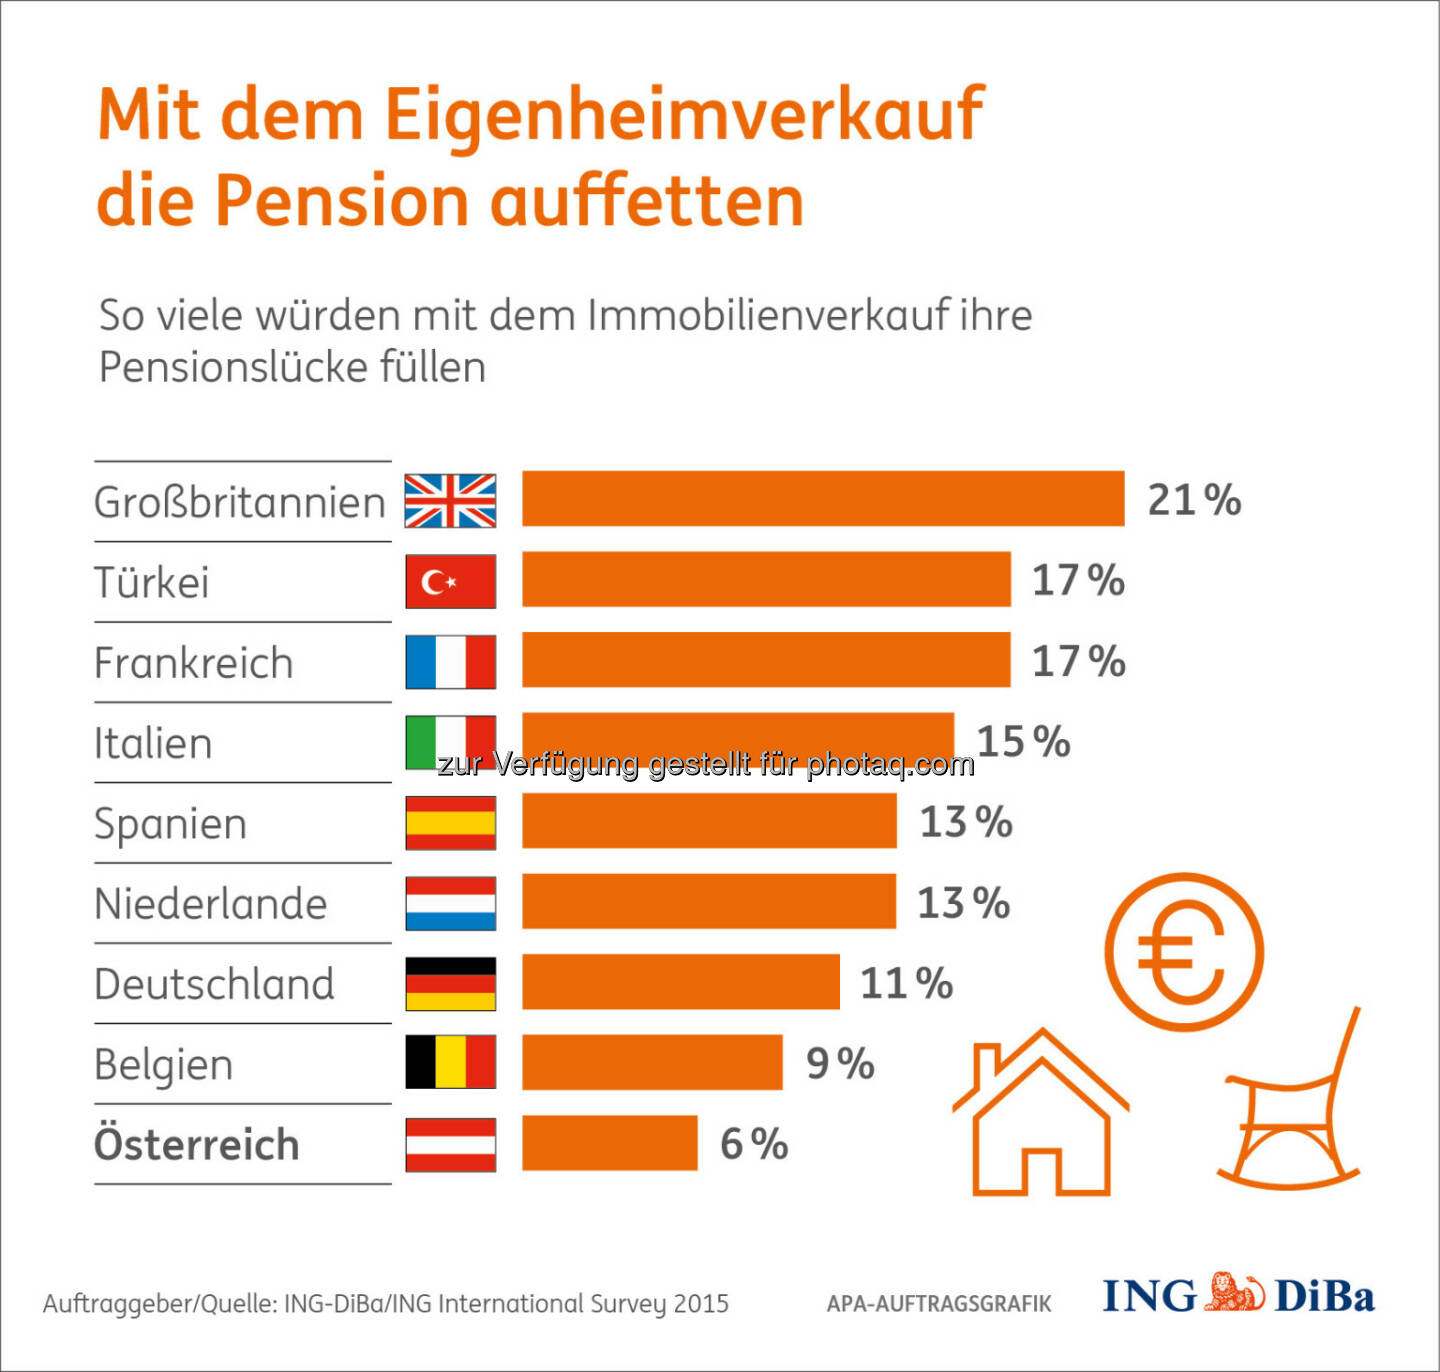 Mit dem Eigenheimverkauf die Pension auffetten : Kein Thema in Österreich : Umfrage im Auftrag der ING-DiBa : Nur 6% der österreichischen Immobilienbesitzer ziehen den Verkauf des Eigenheims für eine bessere Pensionsvorsorge in Betracht. Damit gebührt ihnen der Spitzenplatz der „sesshaftesten“ Europäer : (c) ING-DiBa/ING International Survey 2015